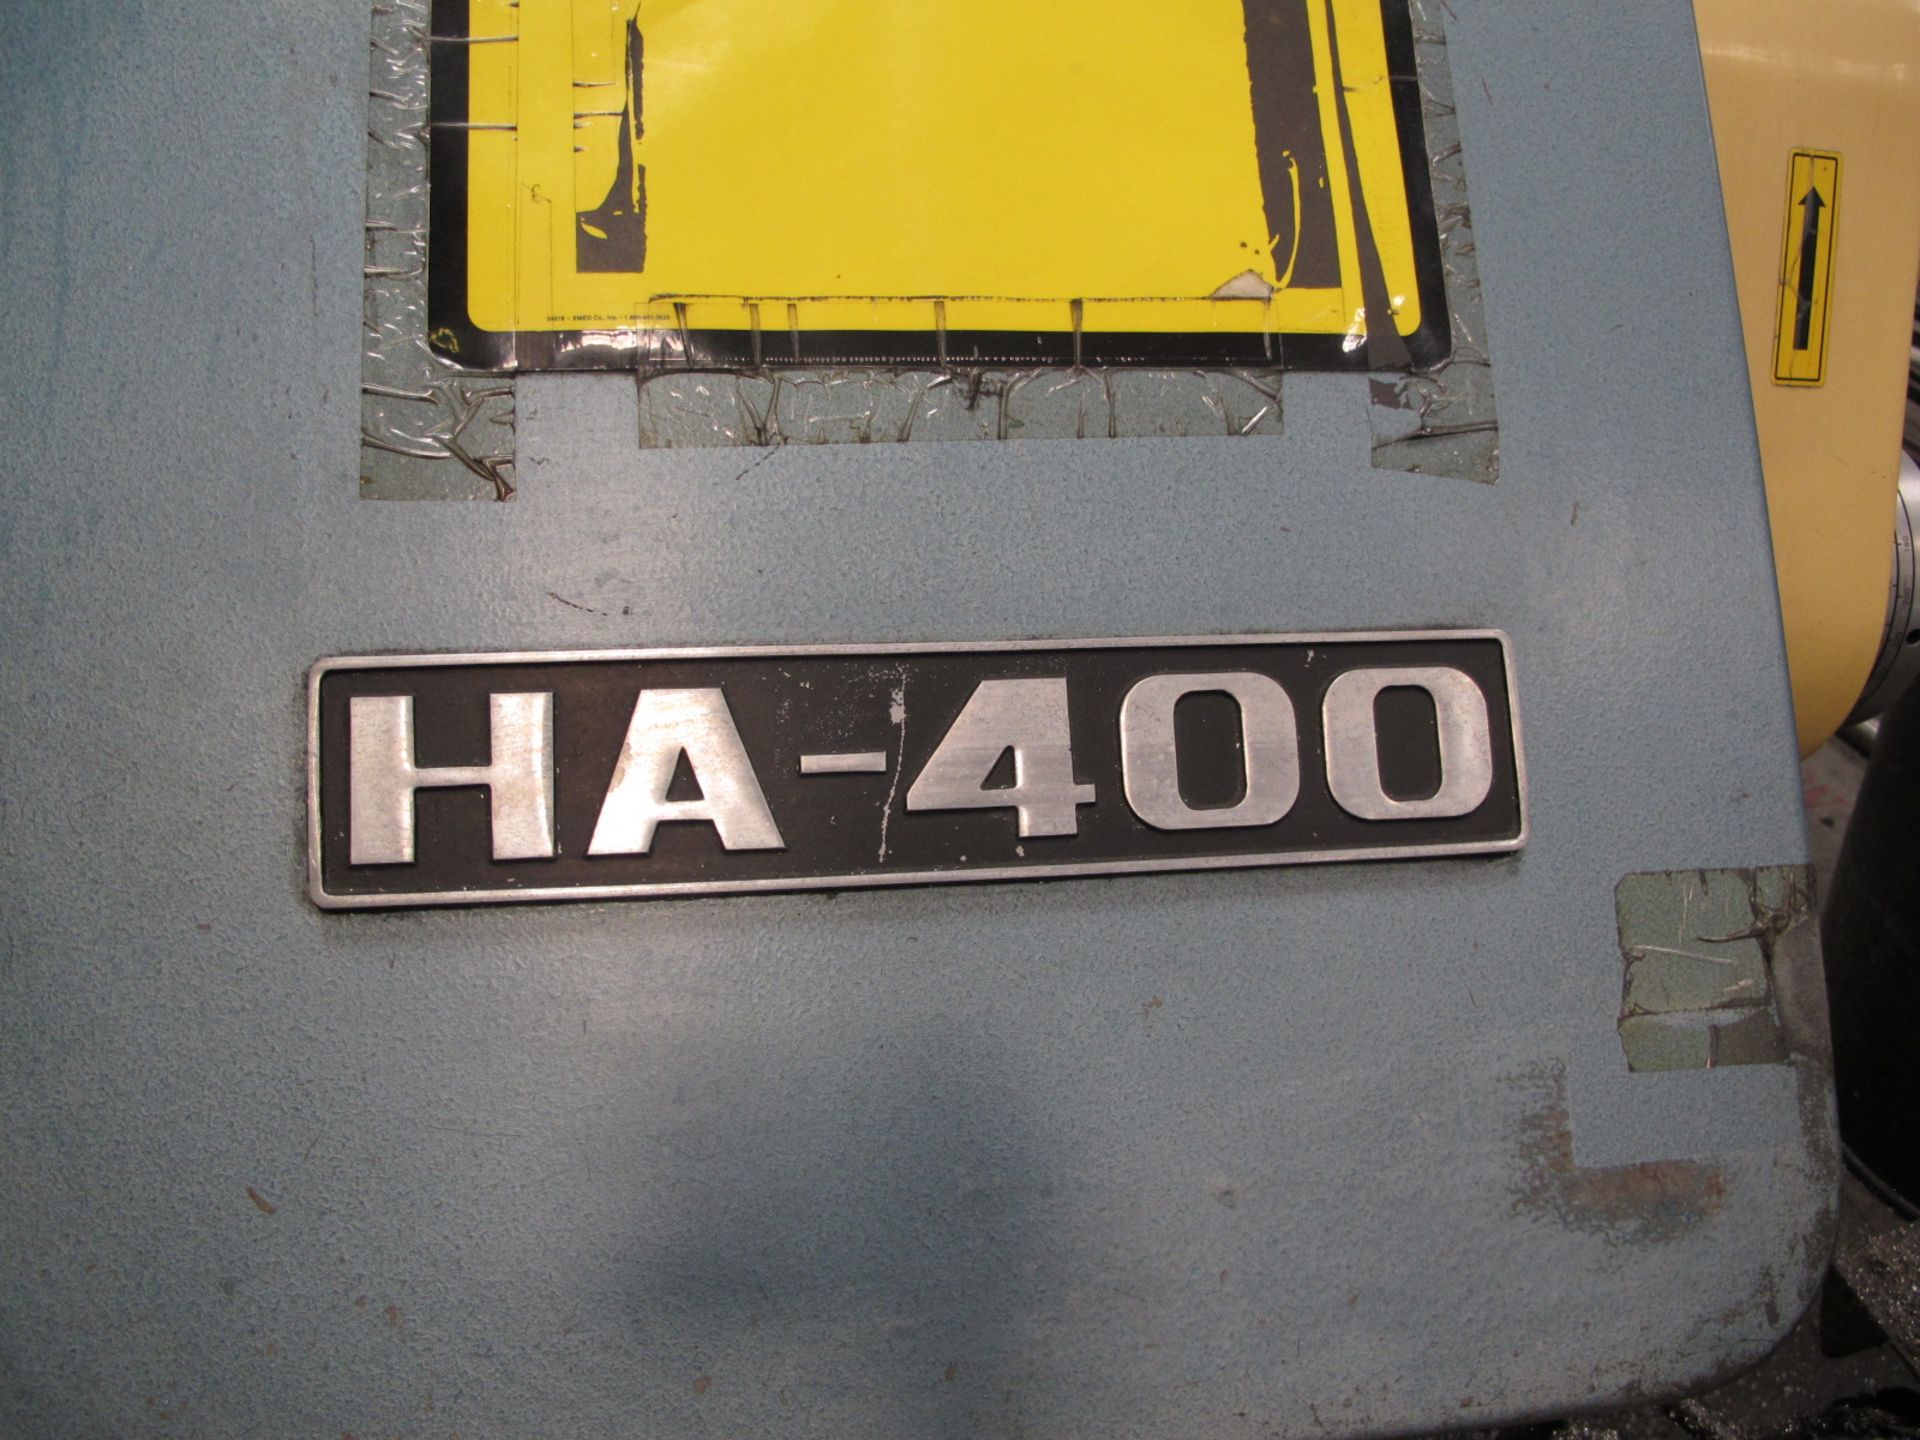 Amada HA-400 16â€ Automatic Hydraulic Horizontal Band Saw s/n 40600708 w/ Amada Controls, Hydraulic - Image 4 of 7